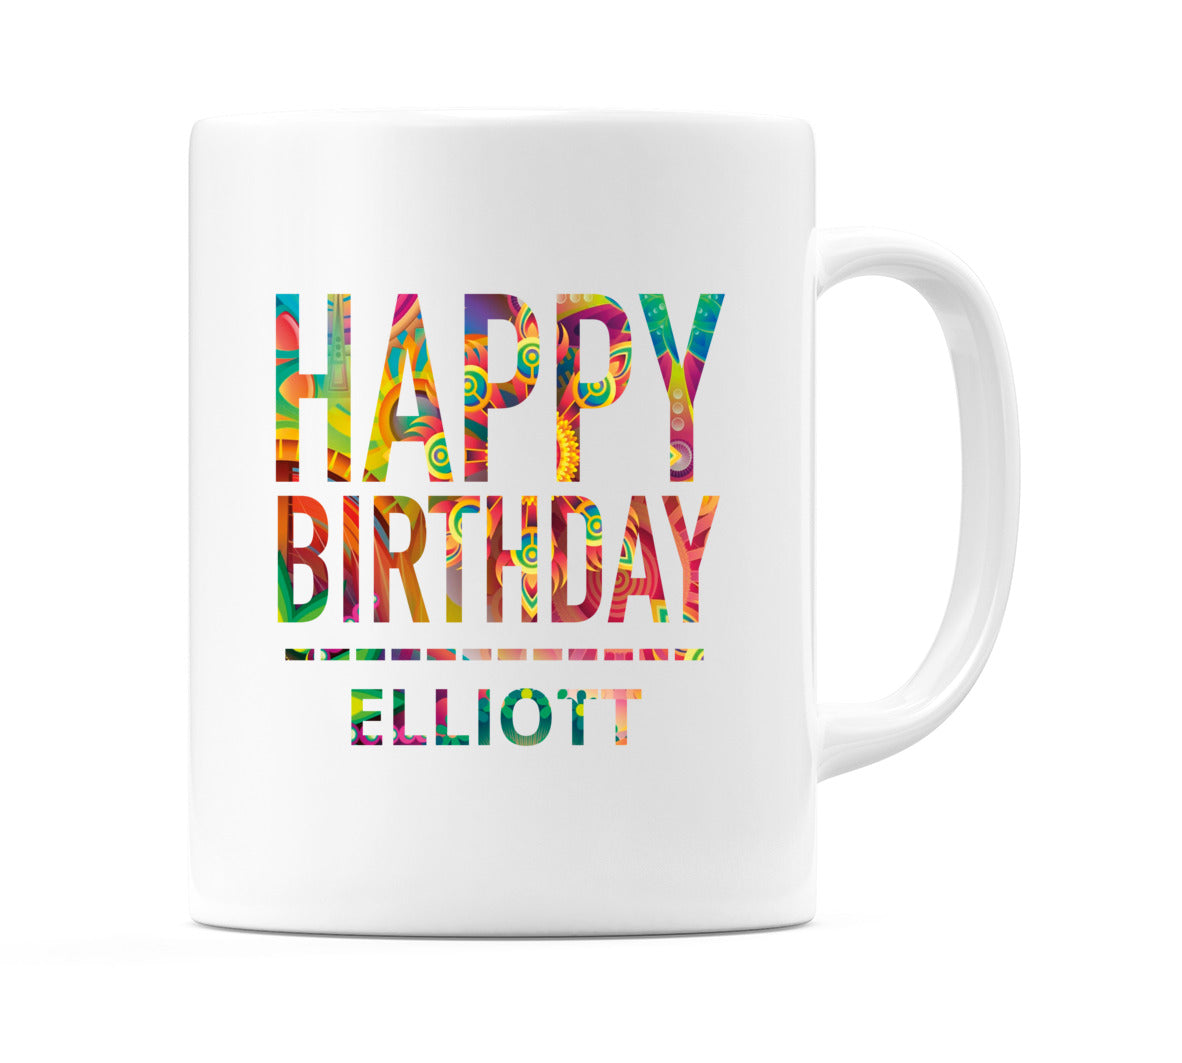 Happy Birthday Elliott (Tie Dye Effect) Mug Cup by WeDoMugs